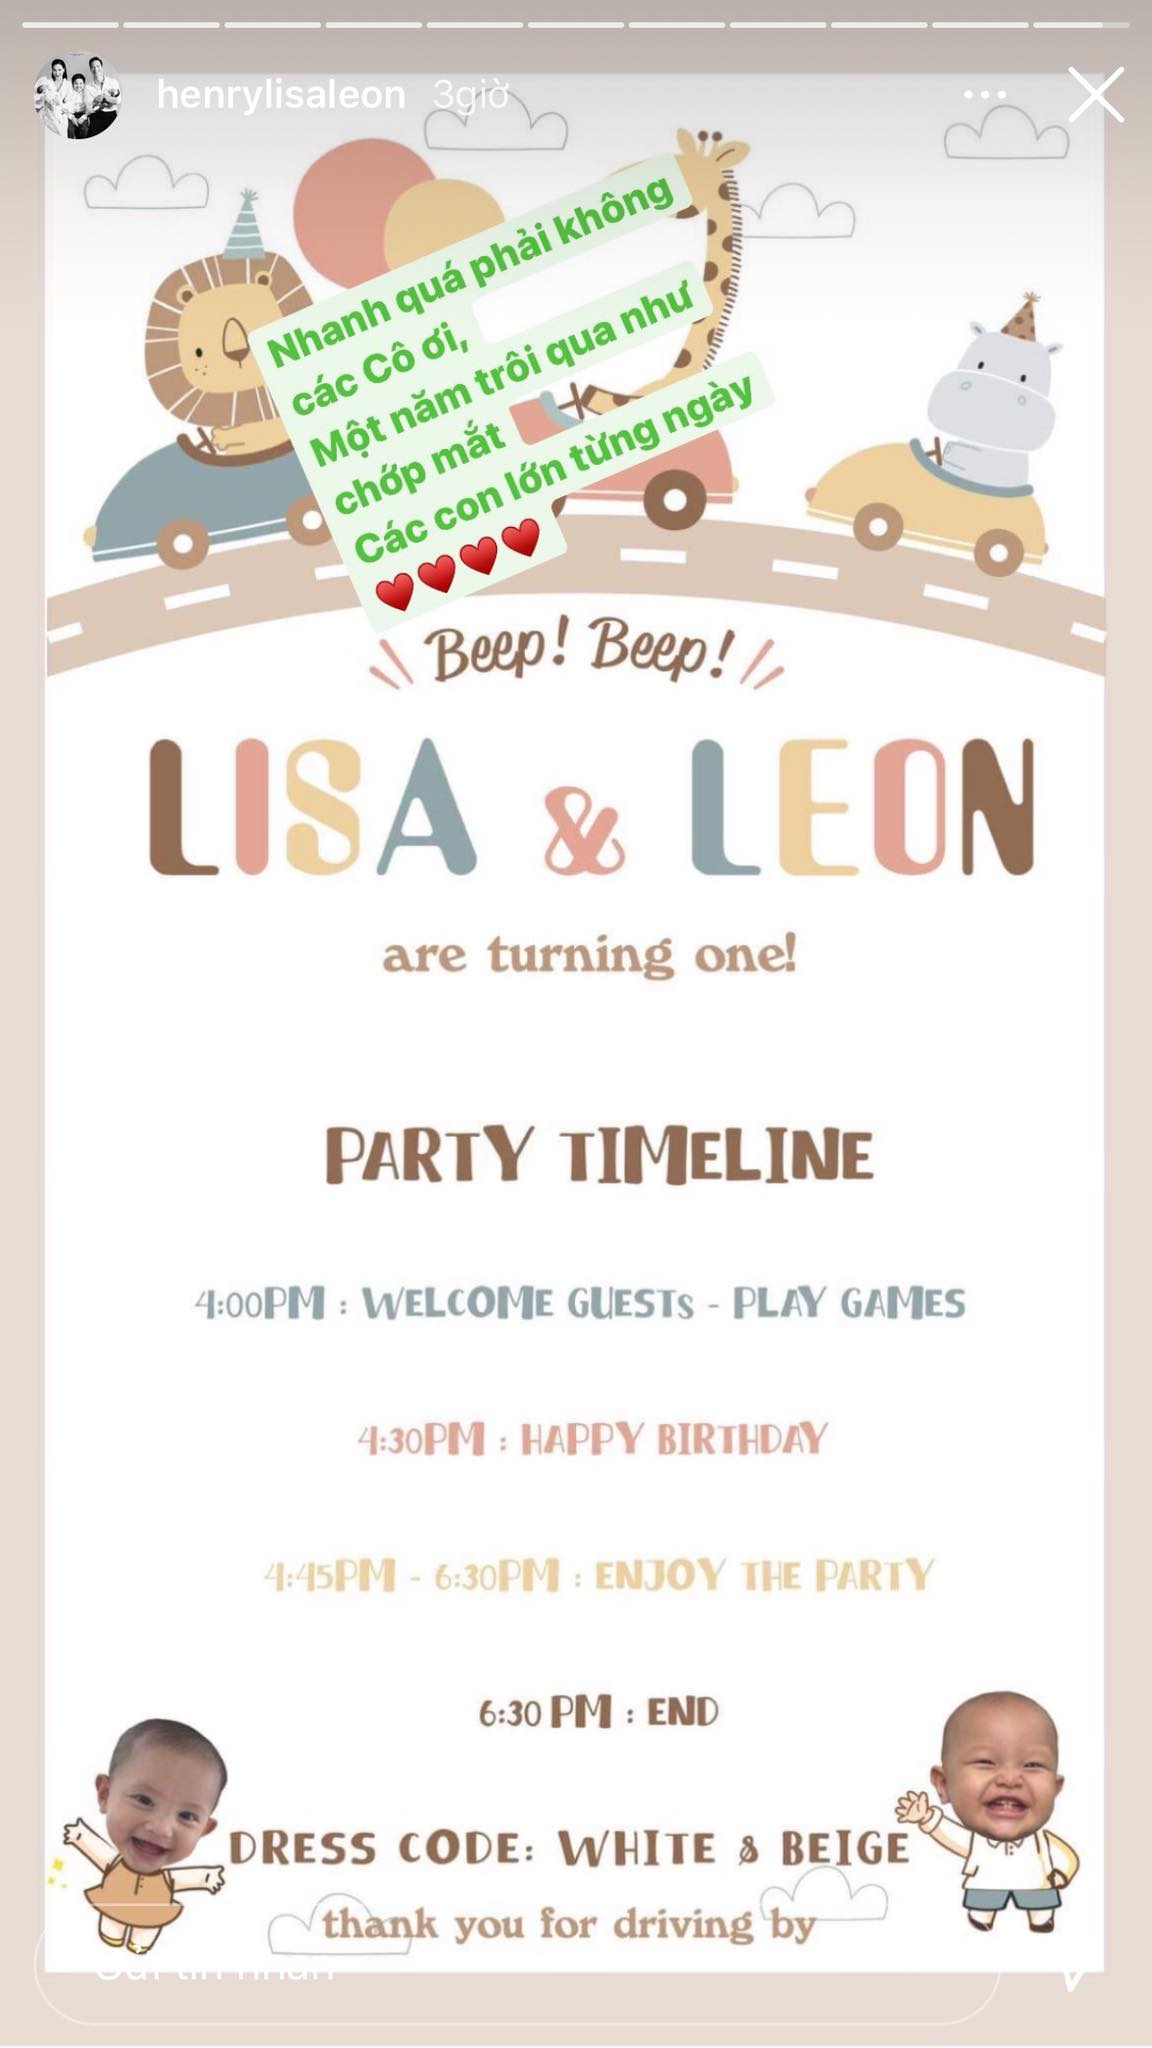 Thiệp mời sinh nhật tròn 1 tuổi của Leon - Lisa nhà Hồ Ngọc Hà siêu đáng yêu